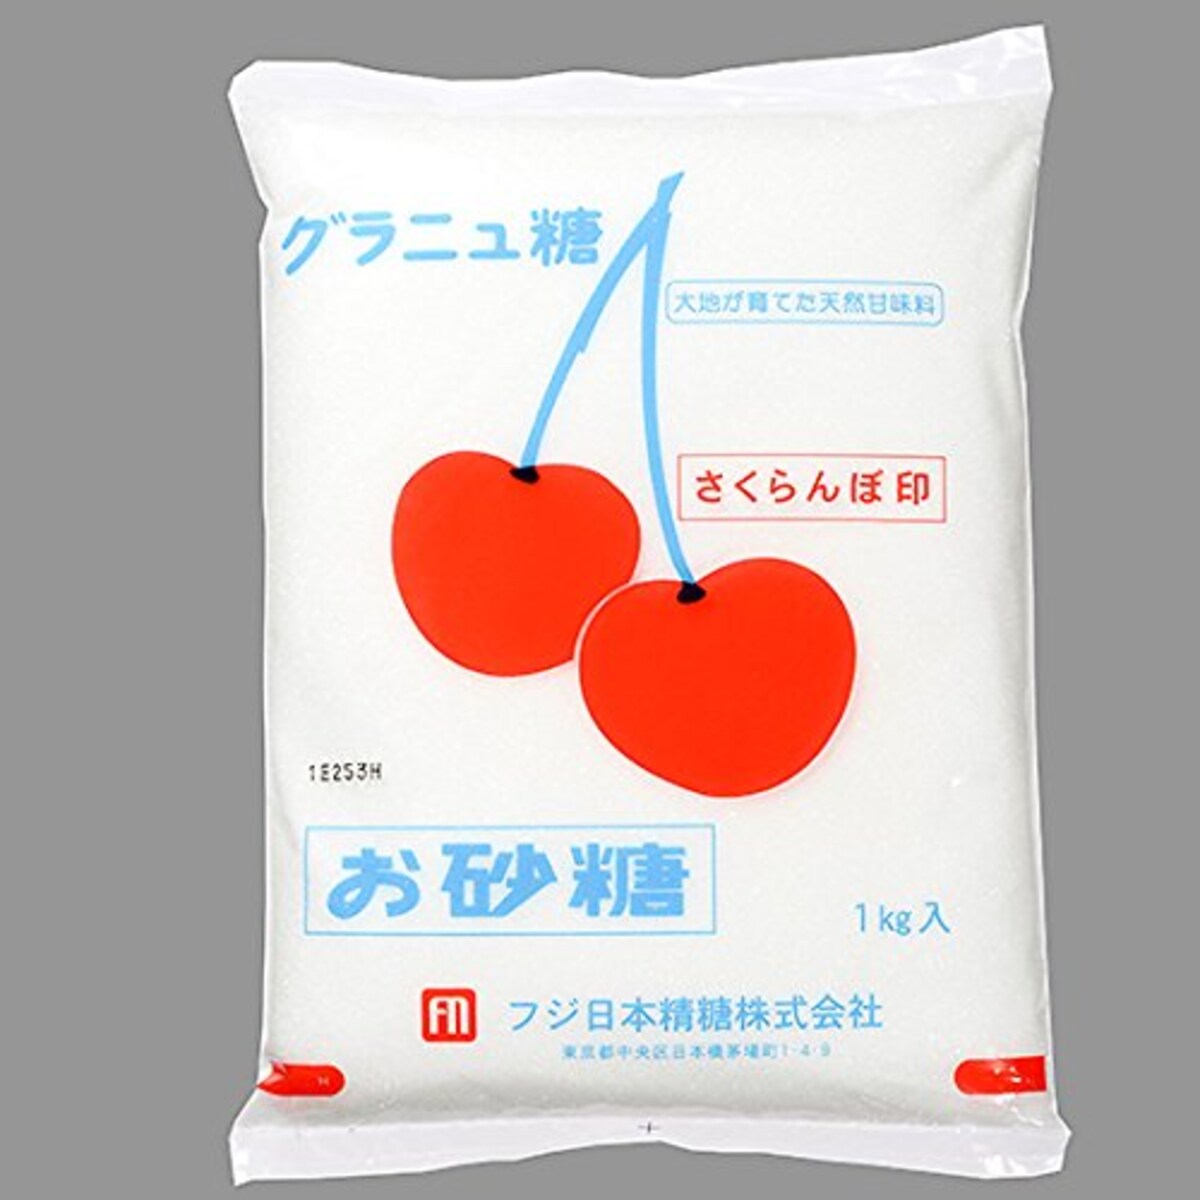 さくらんぼ印 グラニュー糖 / 1kg